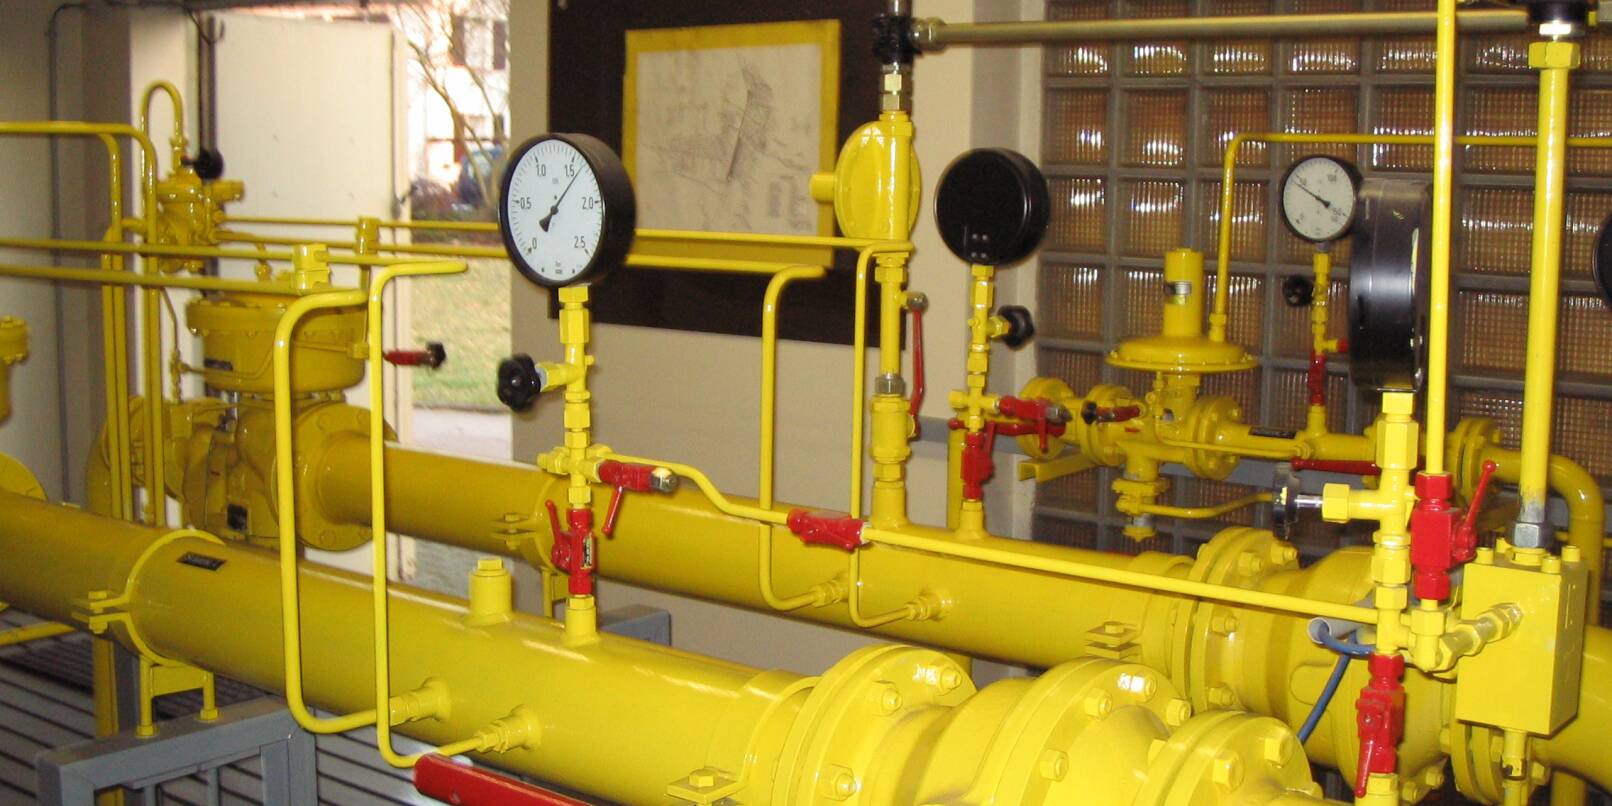 Die Gaspreise der Stadtwerke Weinheim sinken. Das Bild zeigt eine Gasdruckreglerstation.